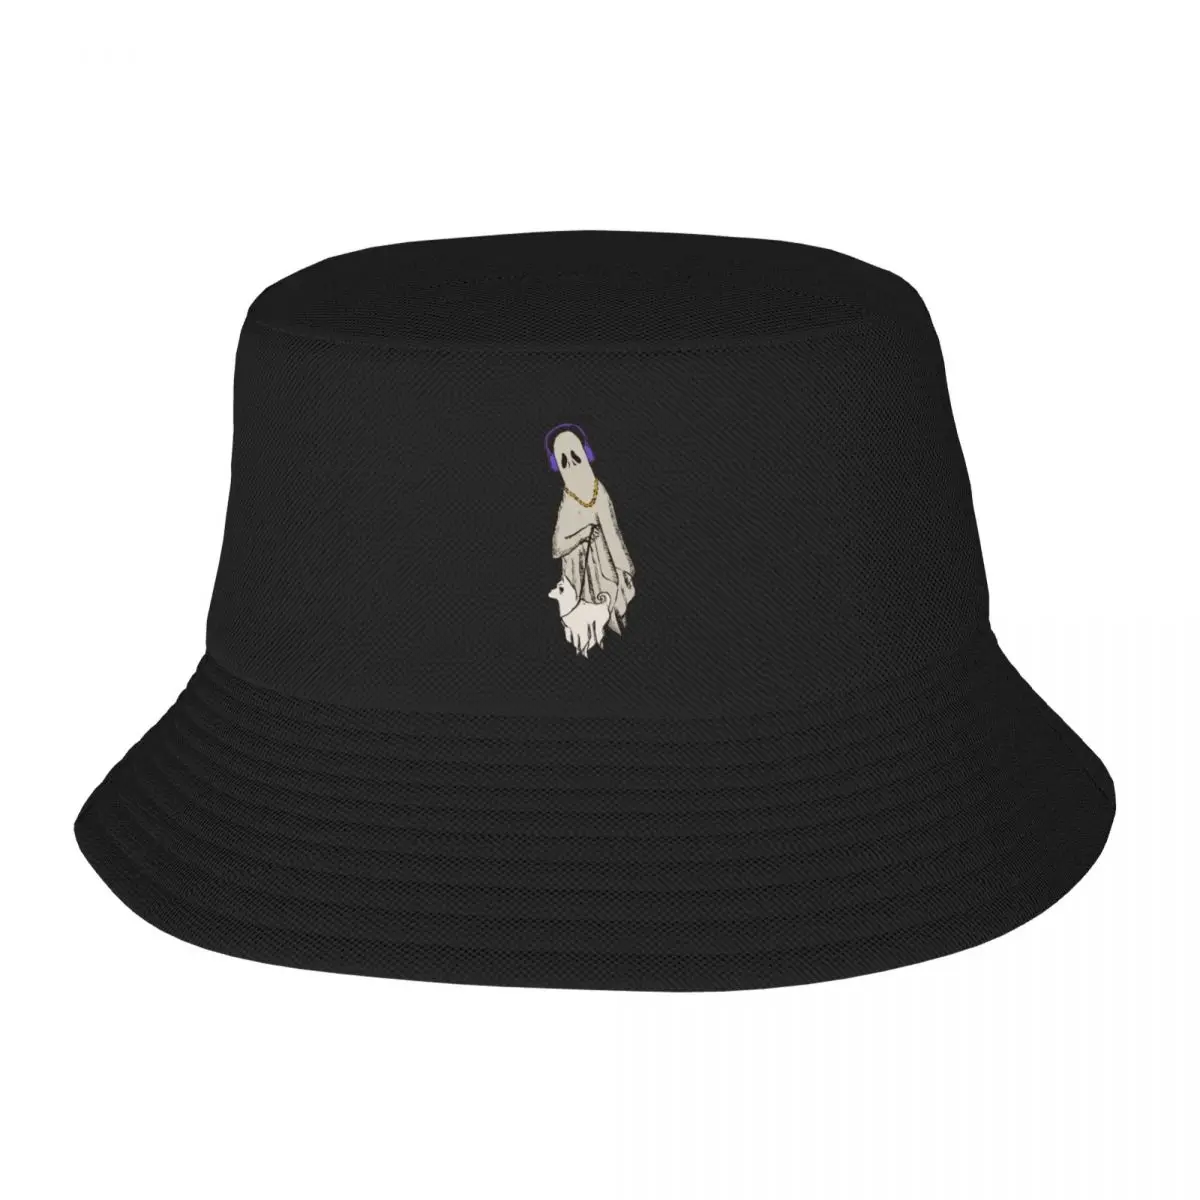 Новый лучший друг до конца, брендовые мужские кепки-ведерки, шляпа большого размера, мужская женская шляпа